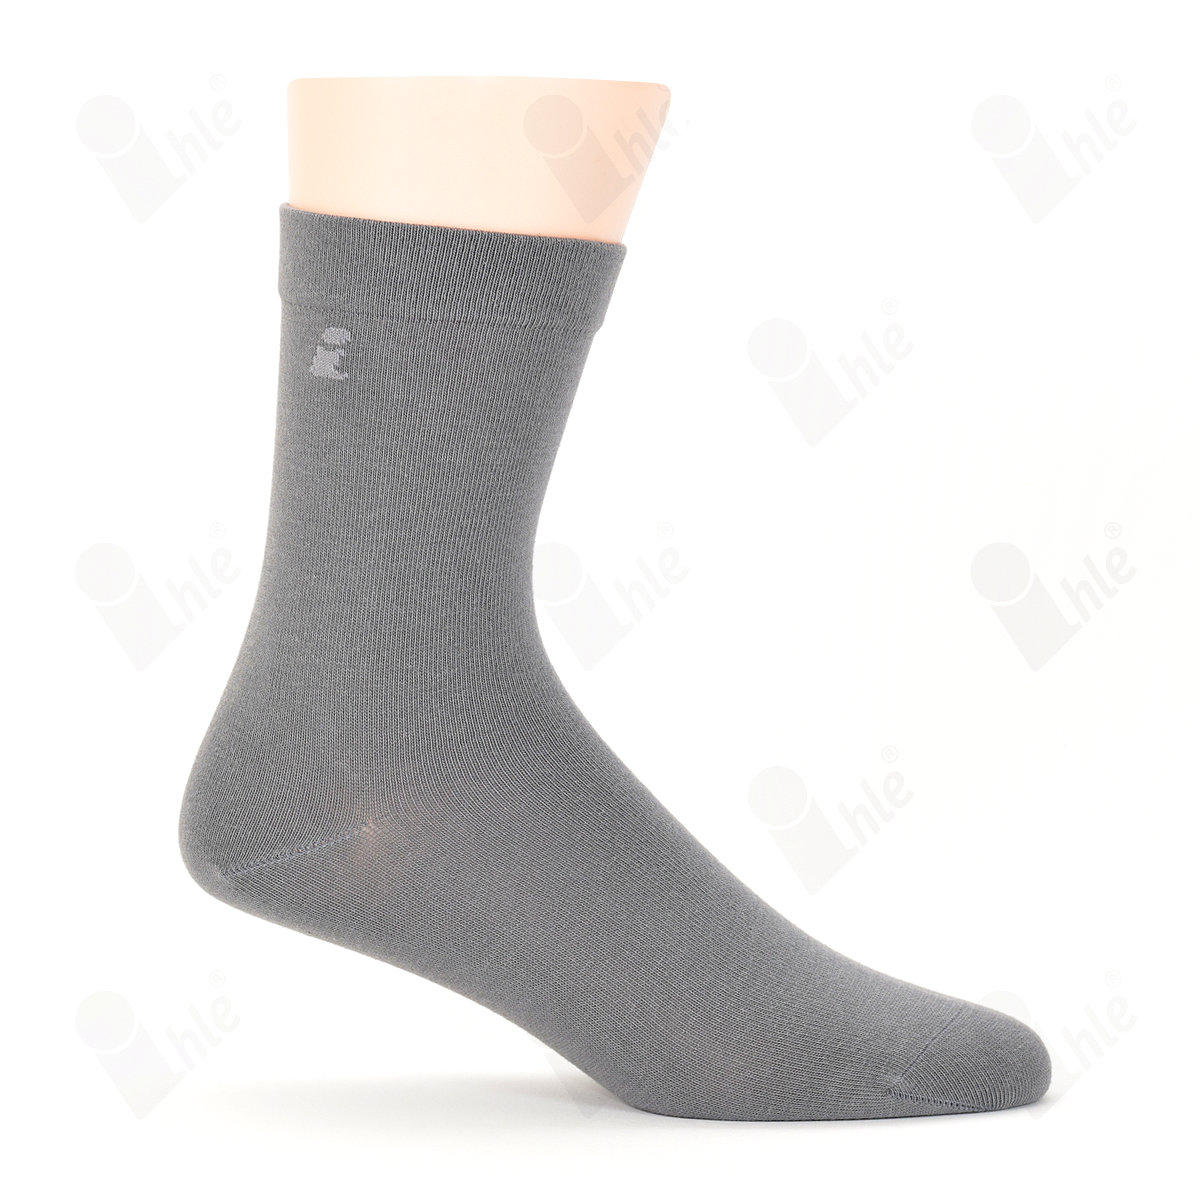 Ihle Socke klassisch grau Gr. 35-38